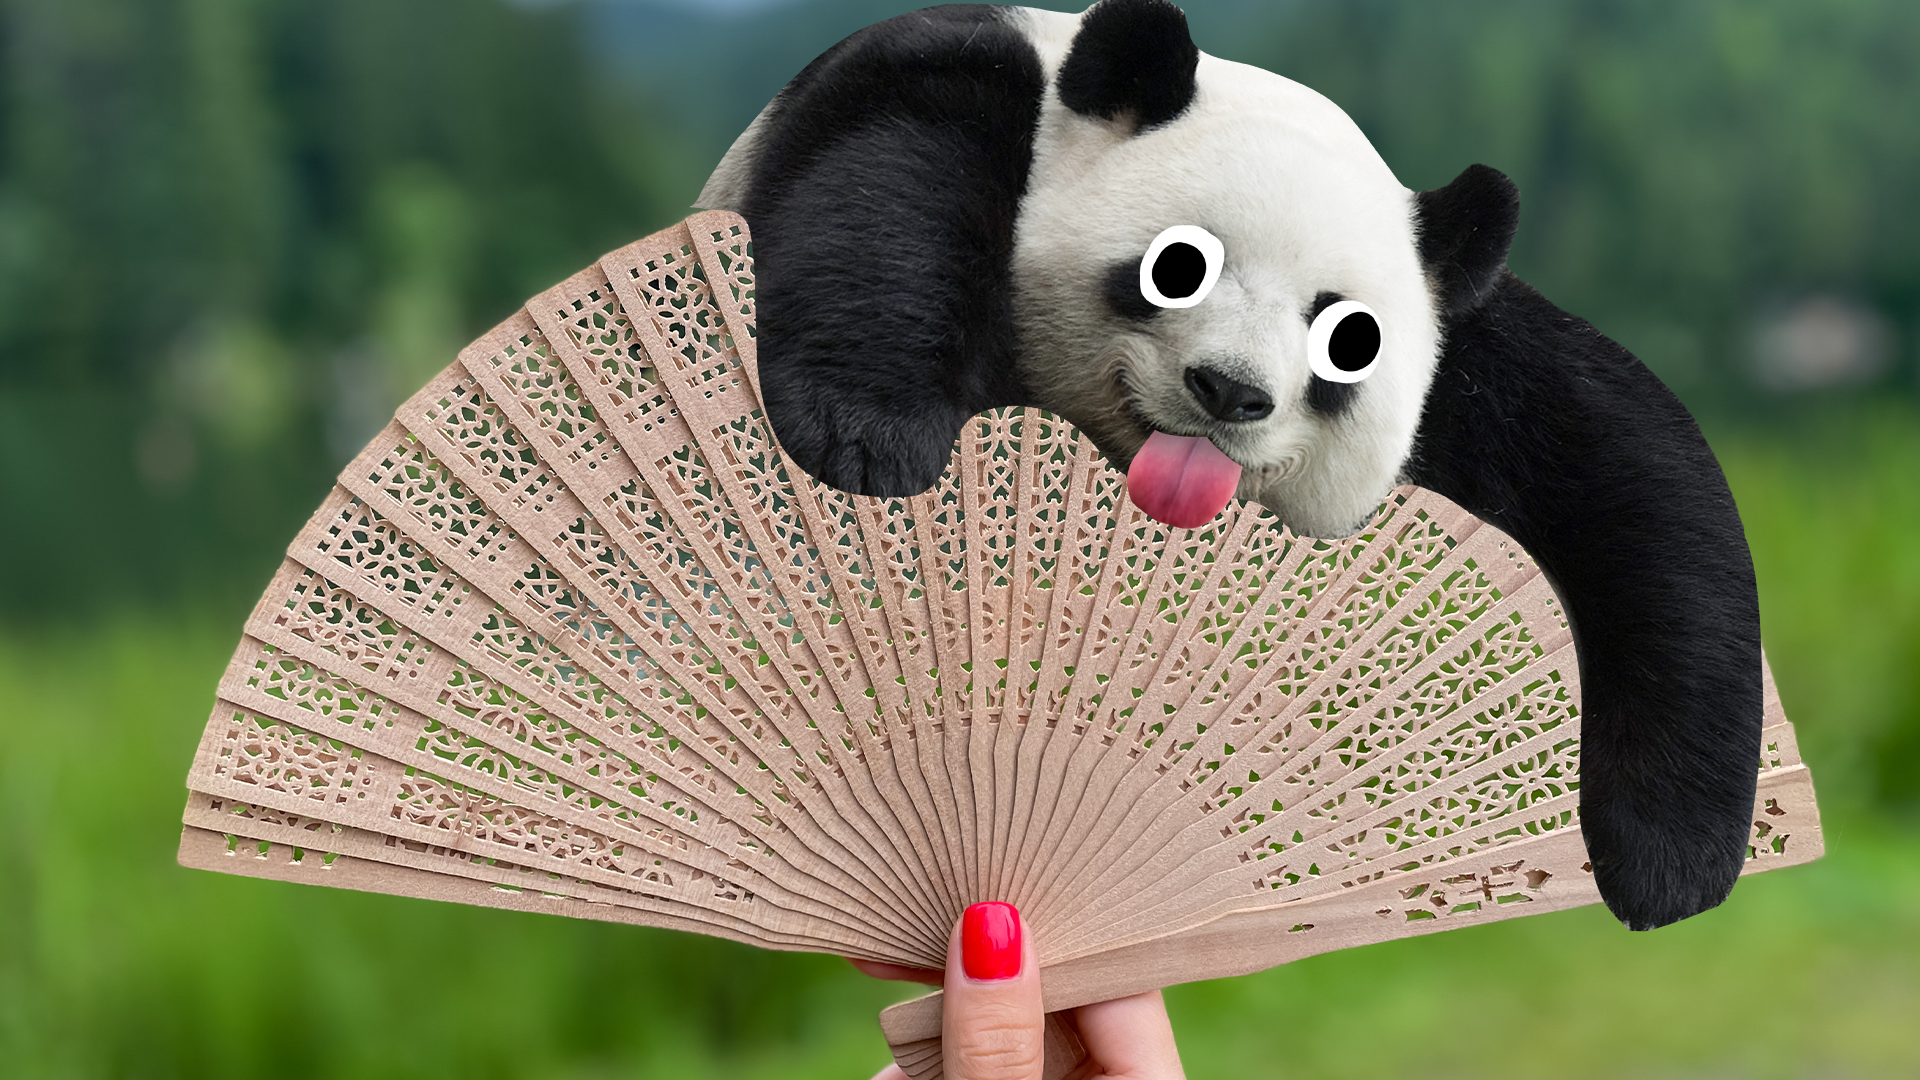 Fan with derpy panda